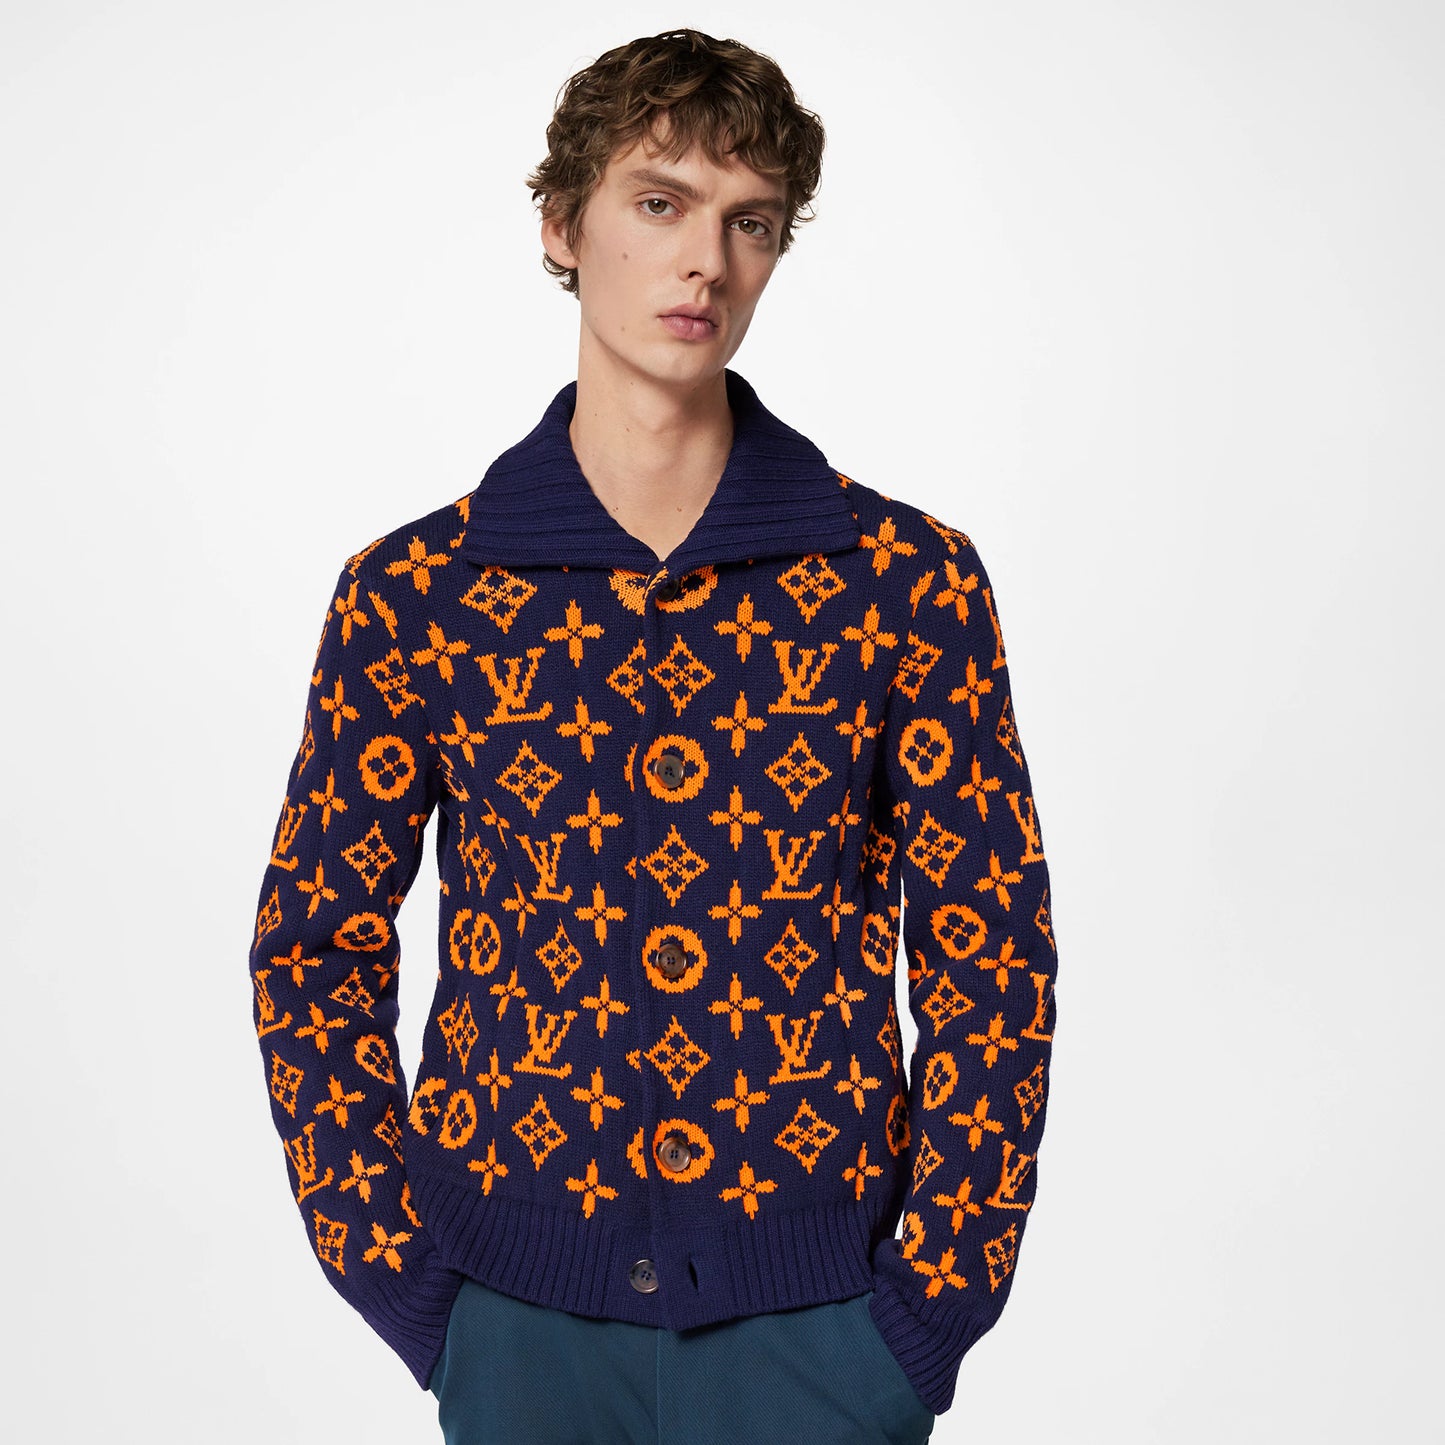 Louis Vuitton Signature Cardigan “Navy/Orange”